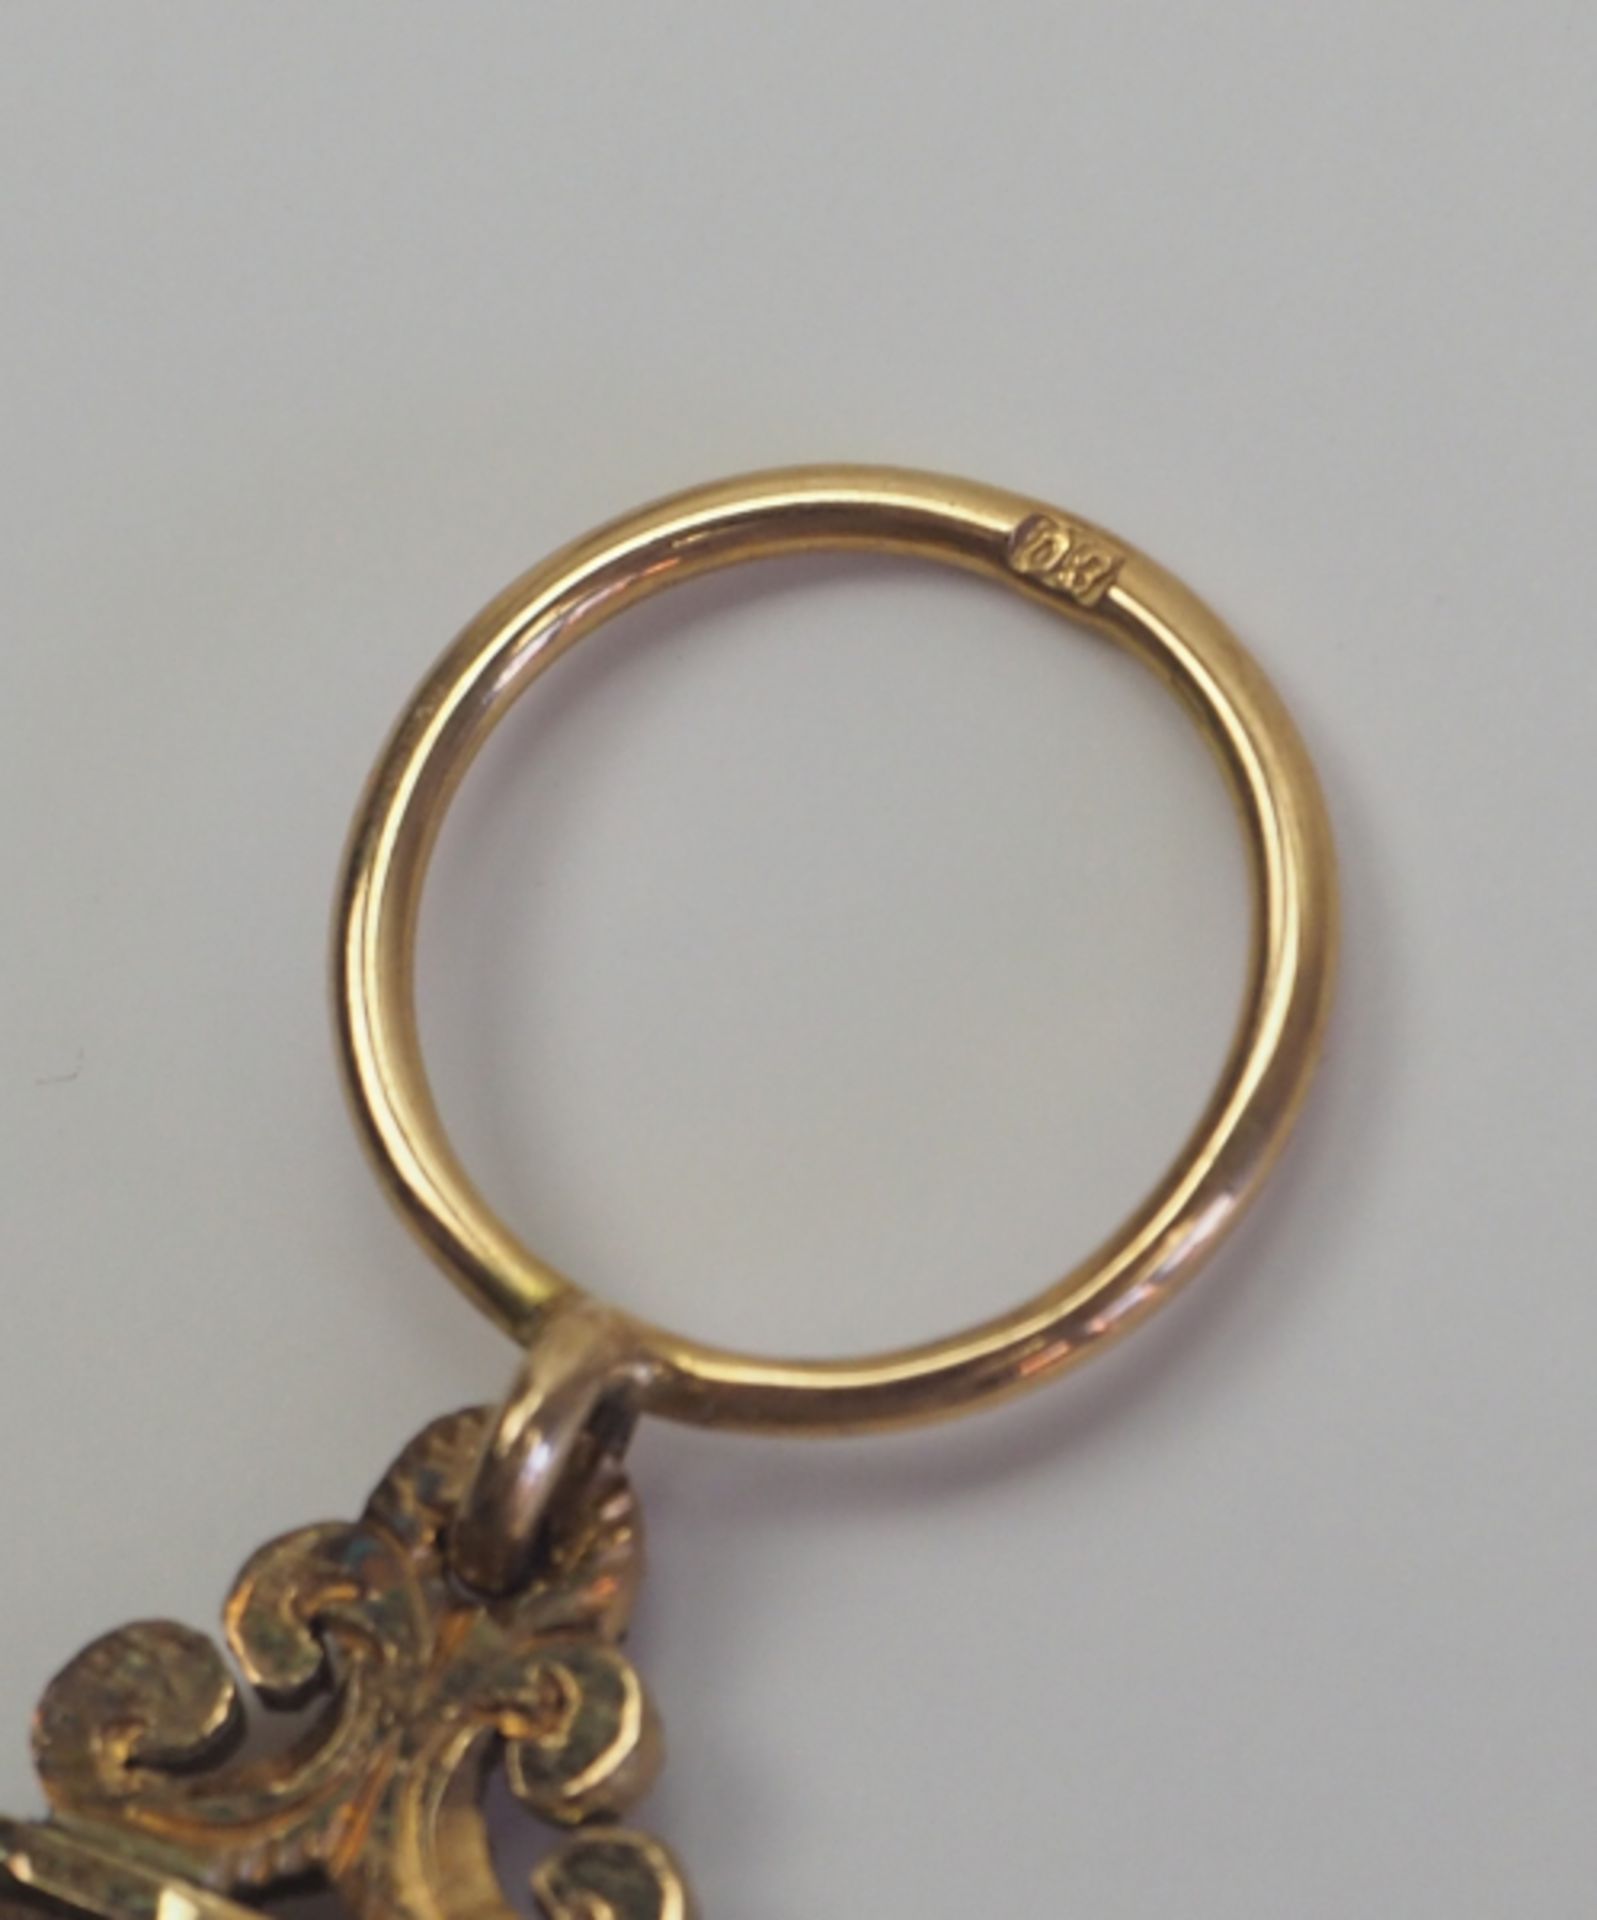 Bayern: Verdienstkreuz für die Jahre 1870/71.Silber, der Rahmen sowie Agraffe und Ring in Gold, - Bild 3 aus 4